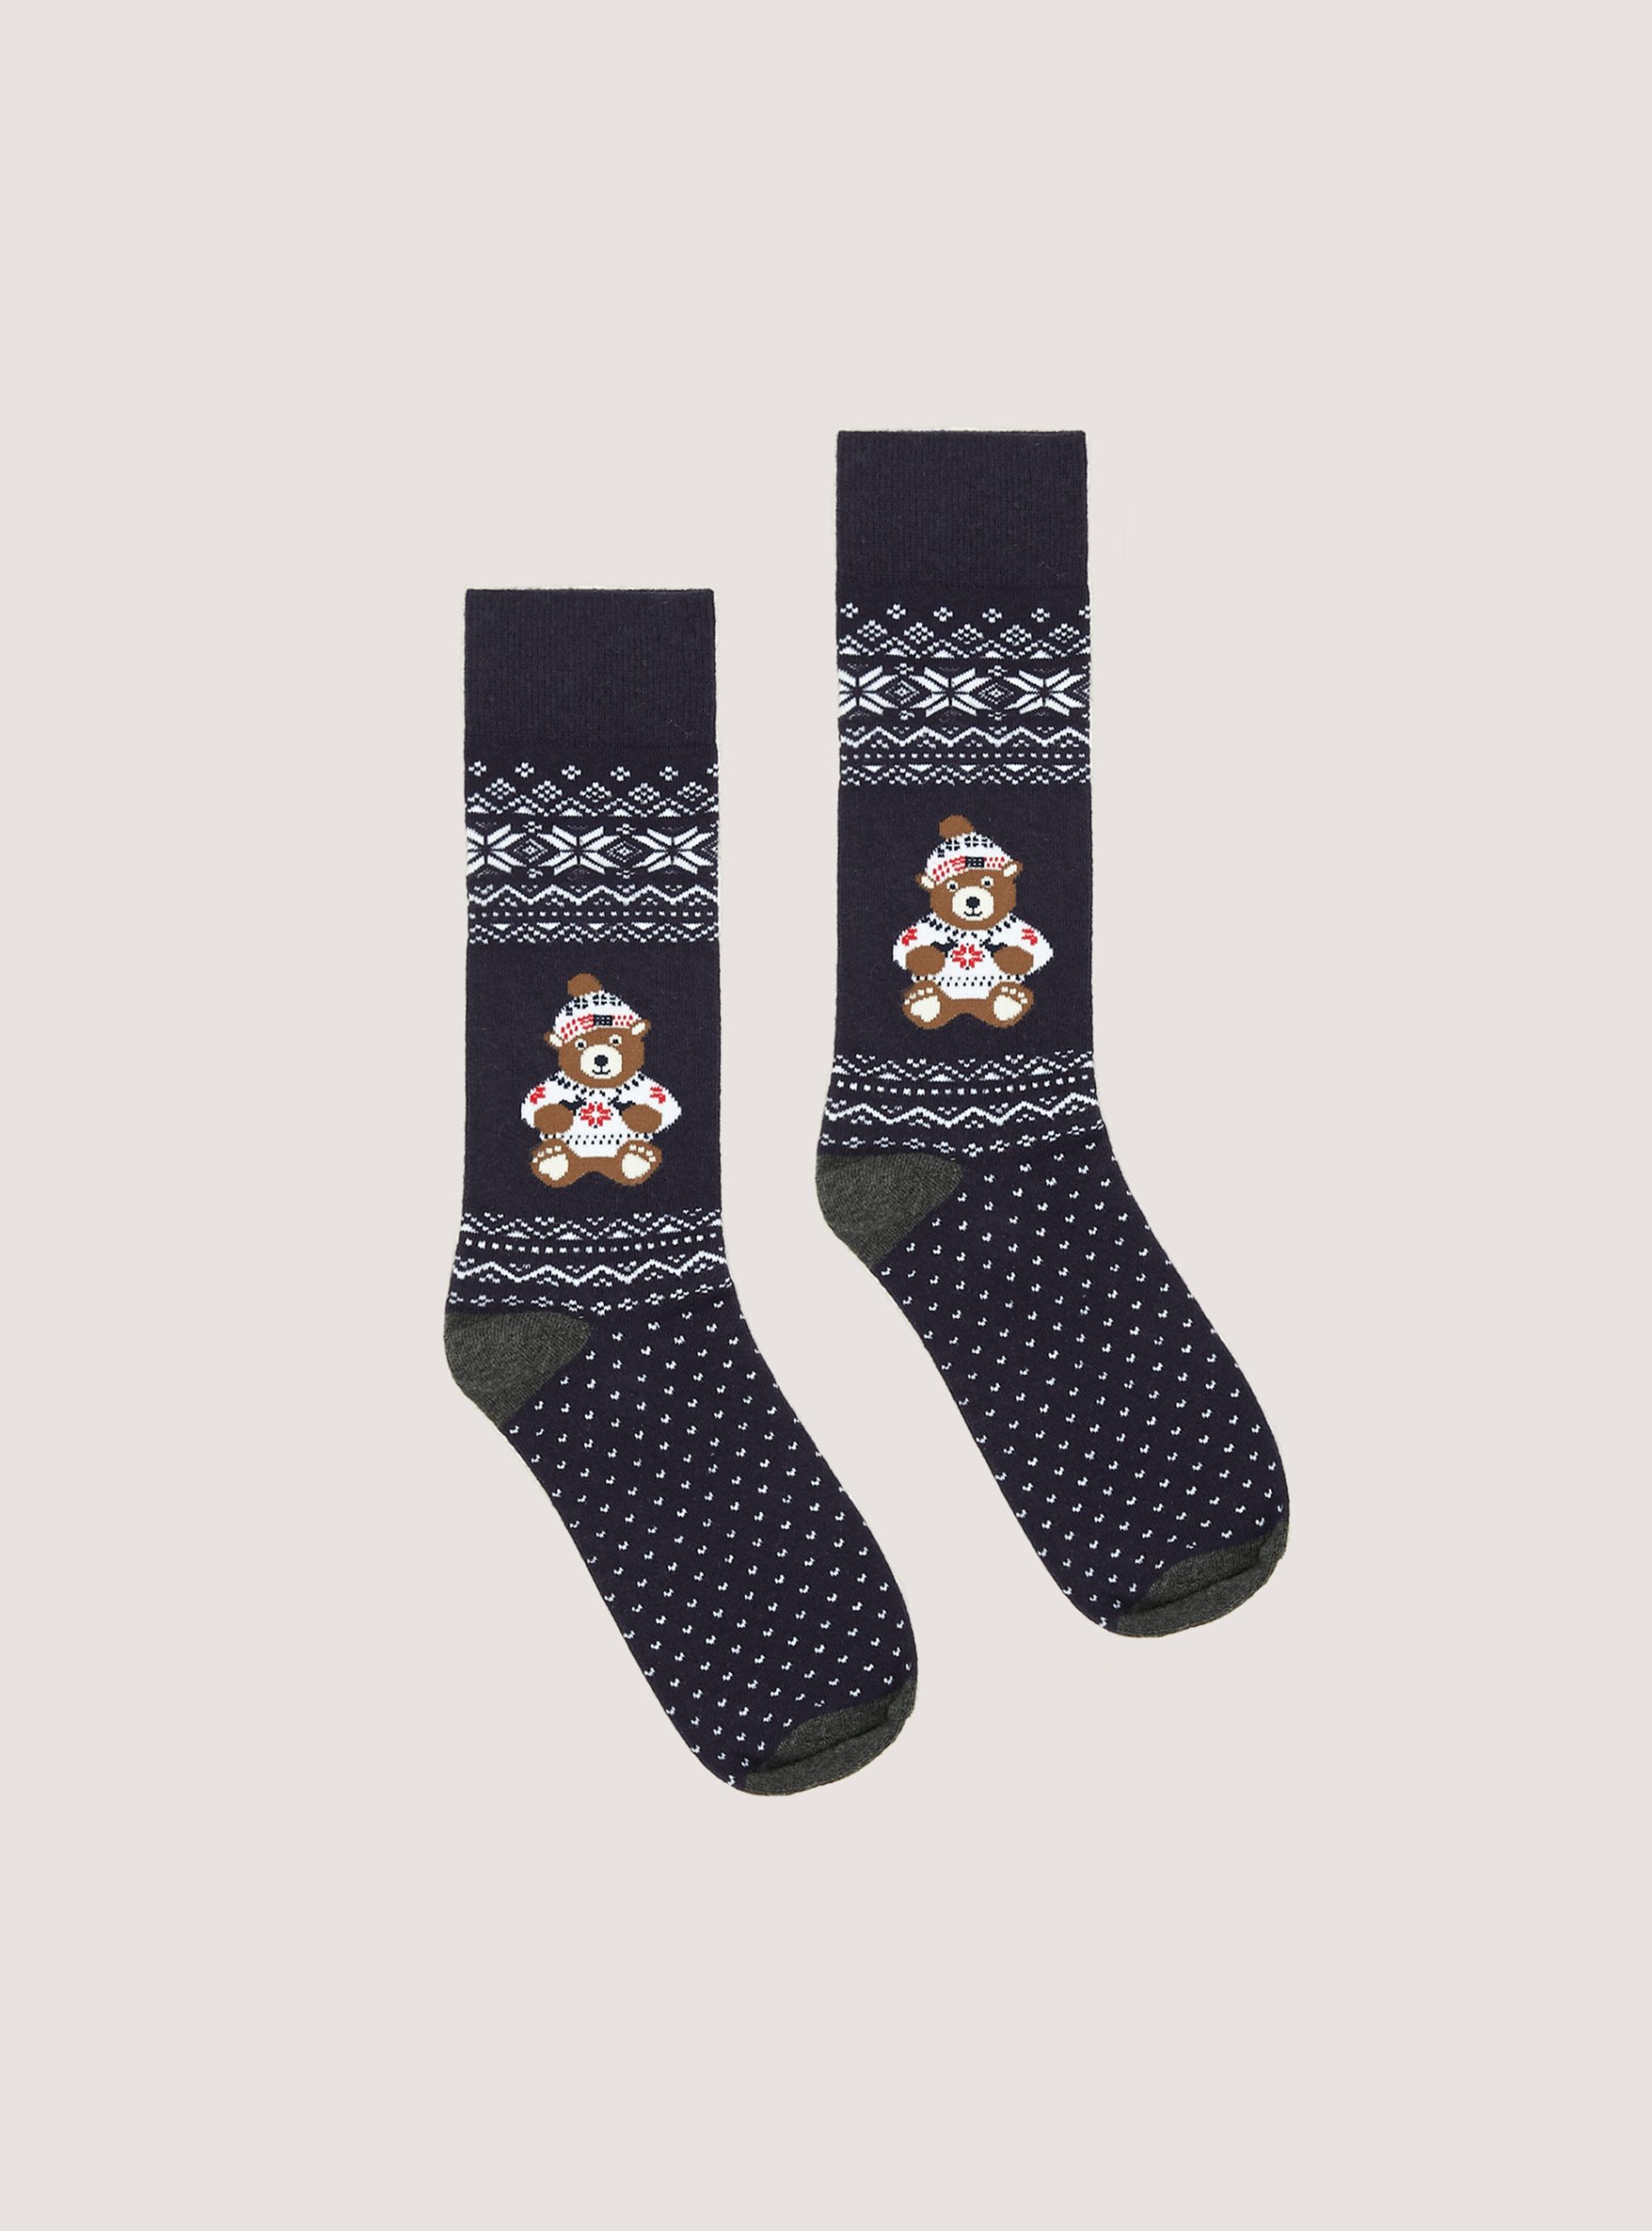 Männer Alcott Socken Xmas Preisangebot Set Of 3 Christmas Socks – 2